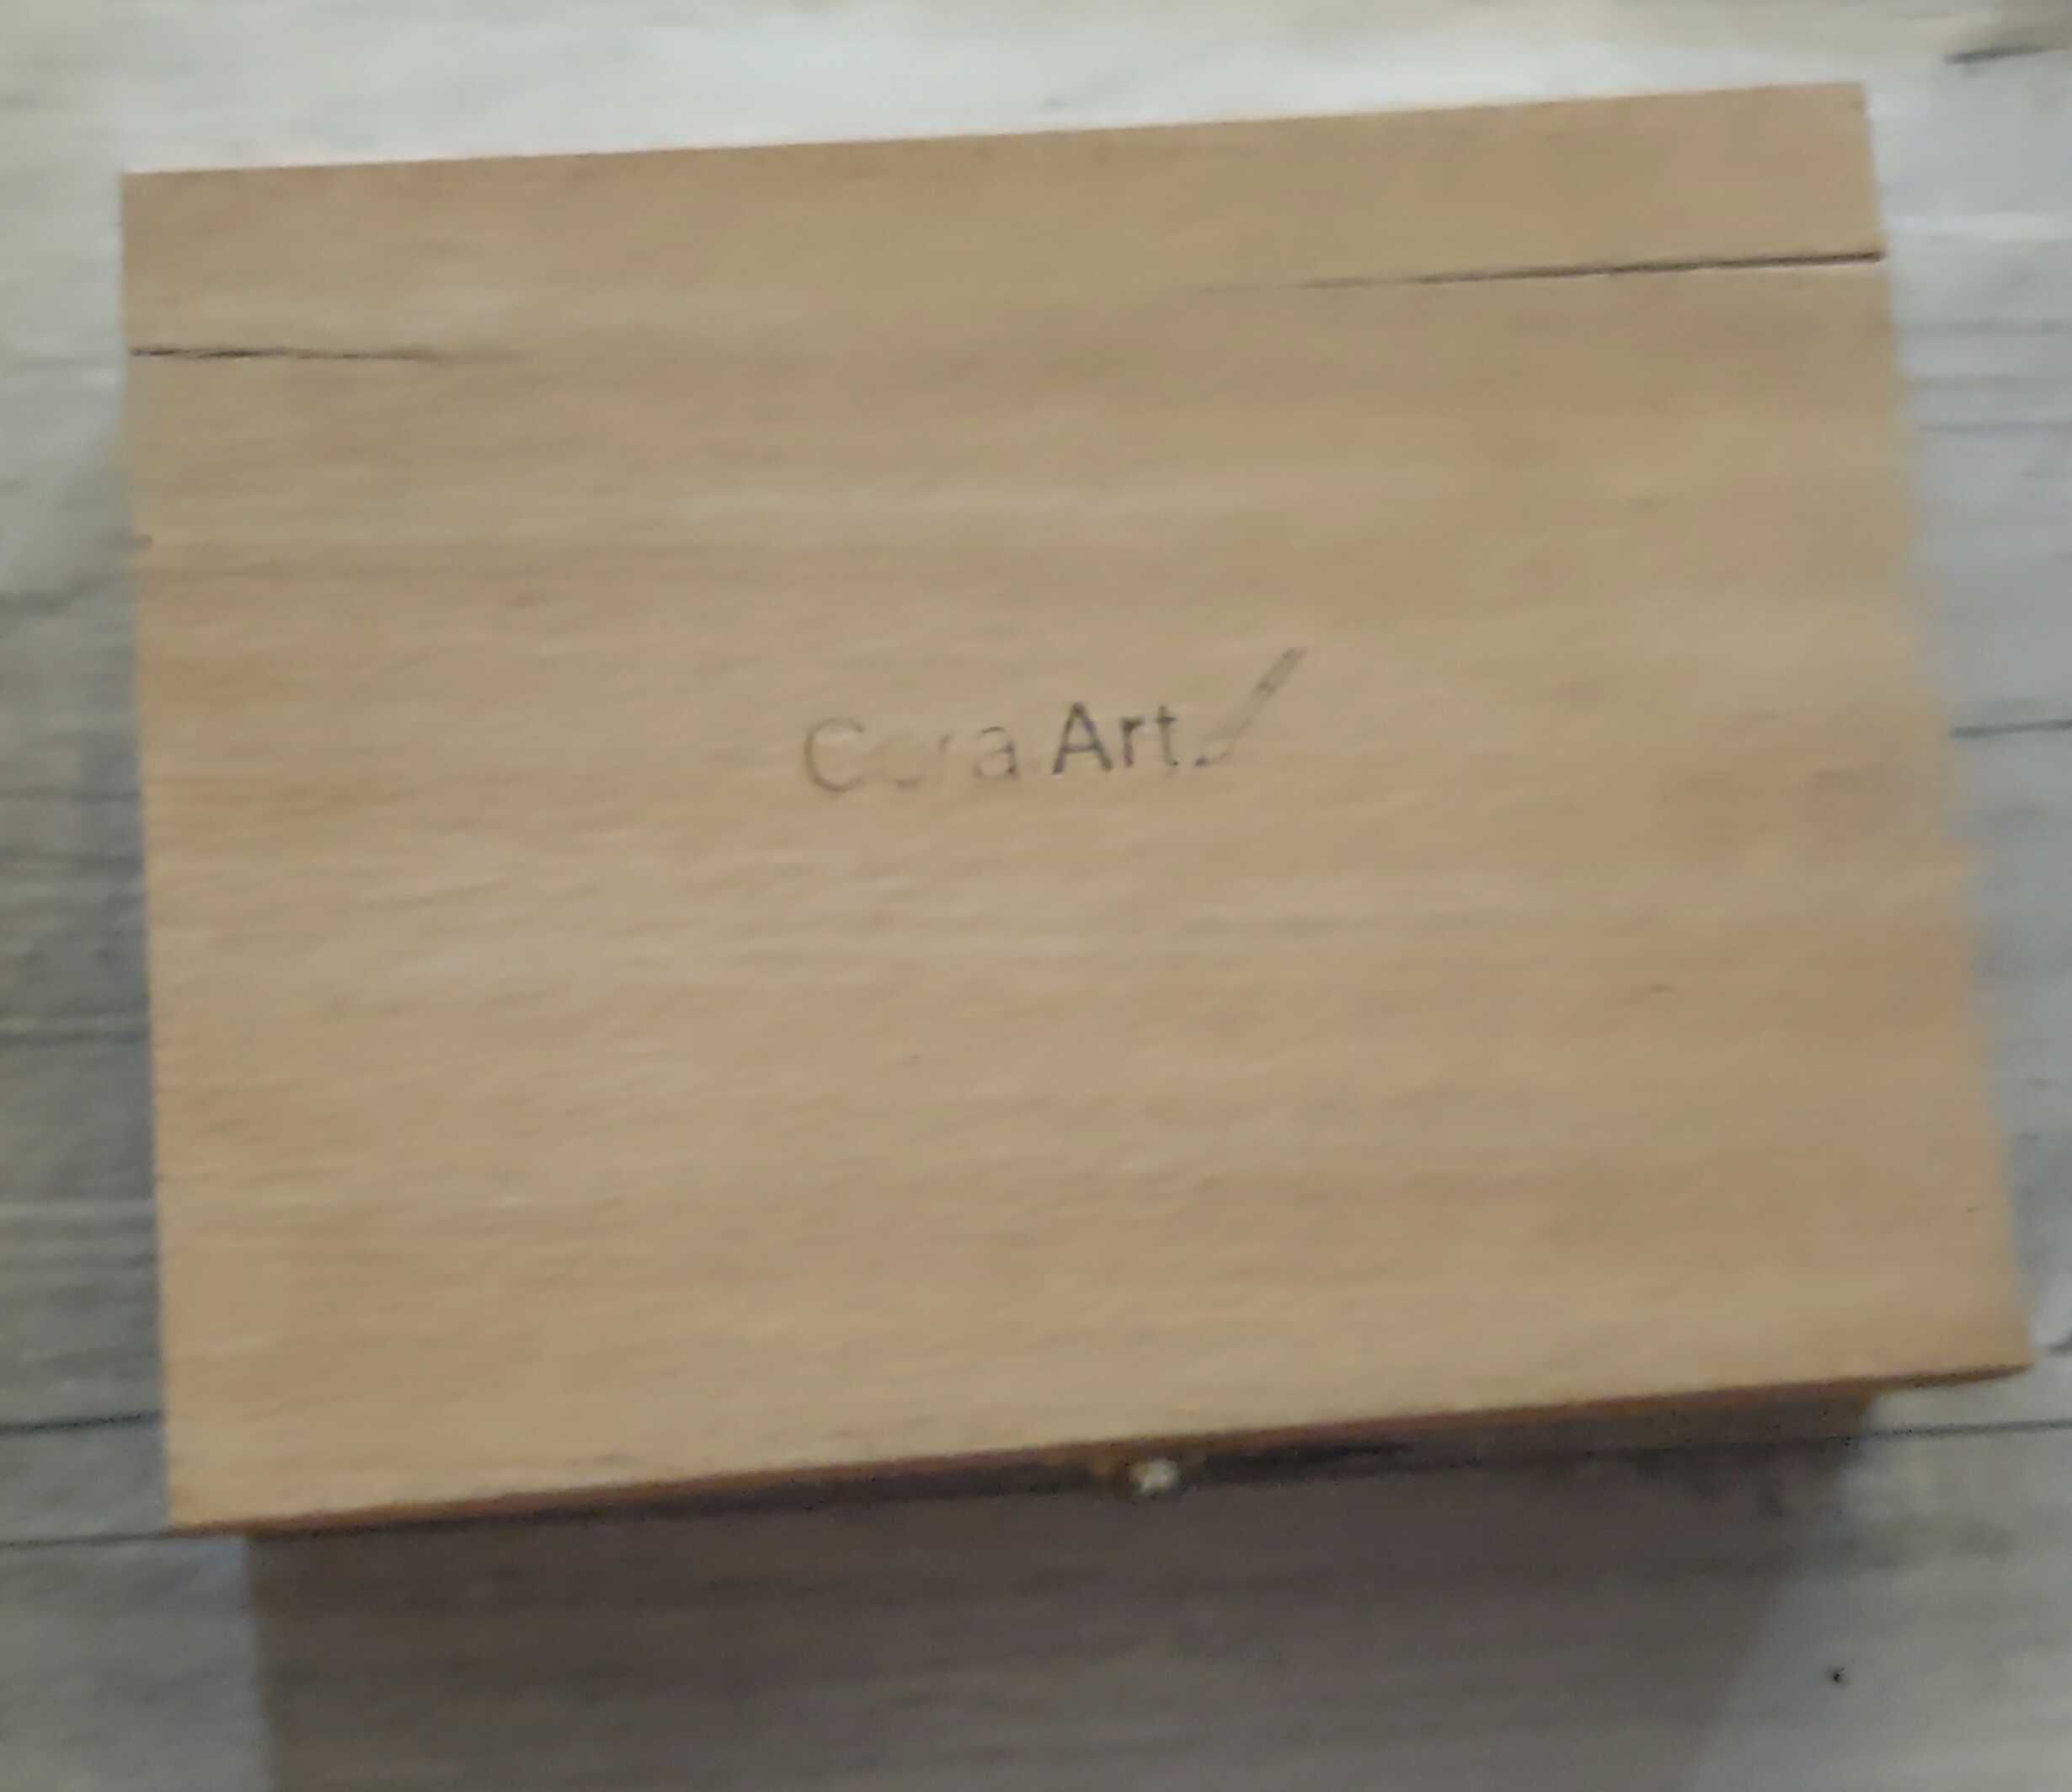 Zestaw do rysowania szkicowania węglem w drewnianym pudełku Cora Art